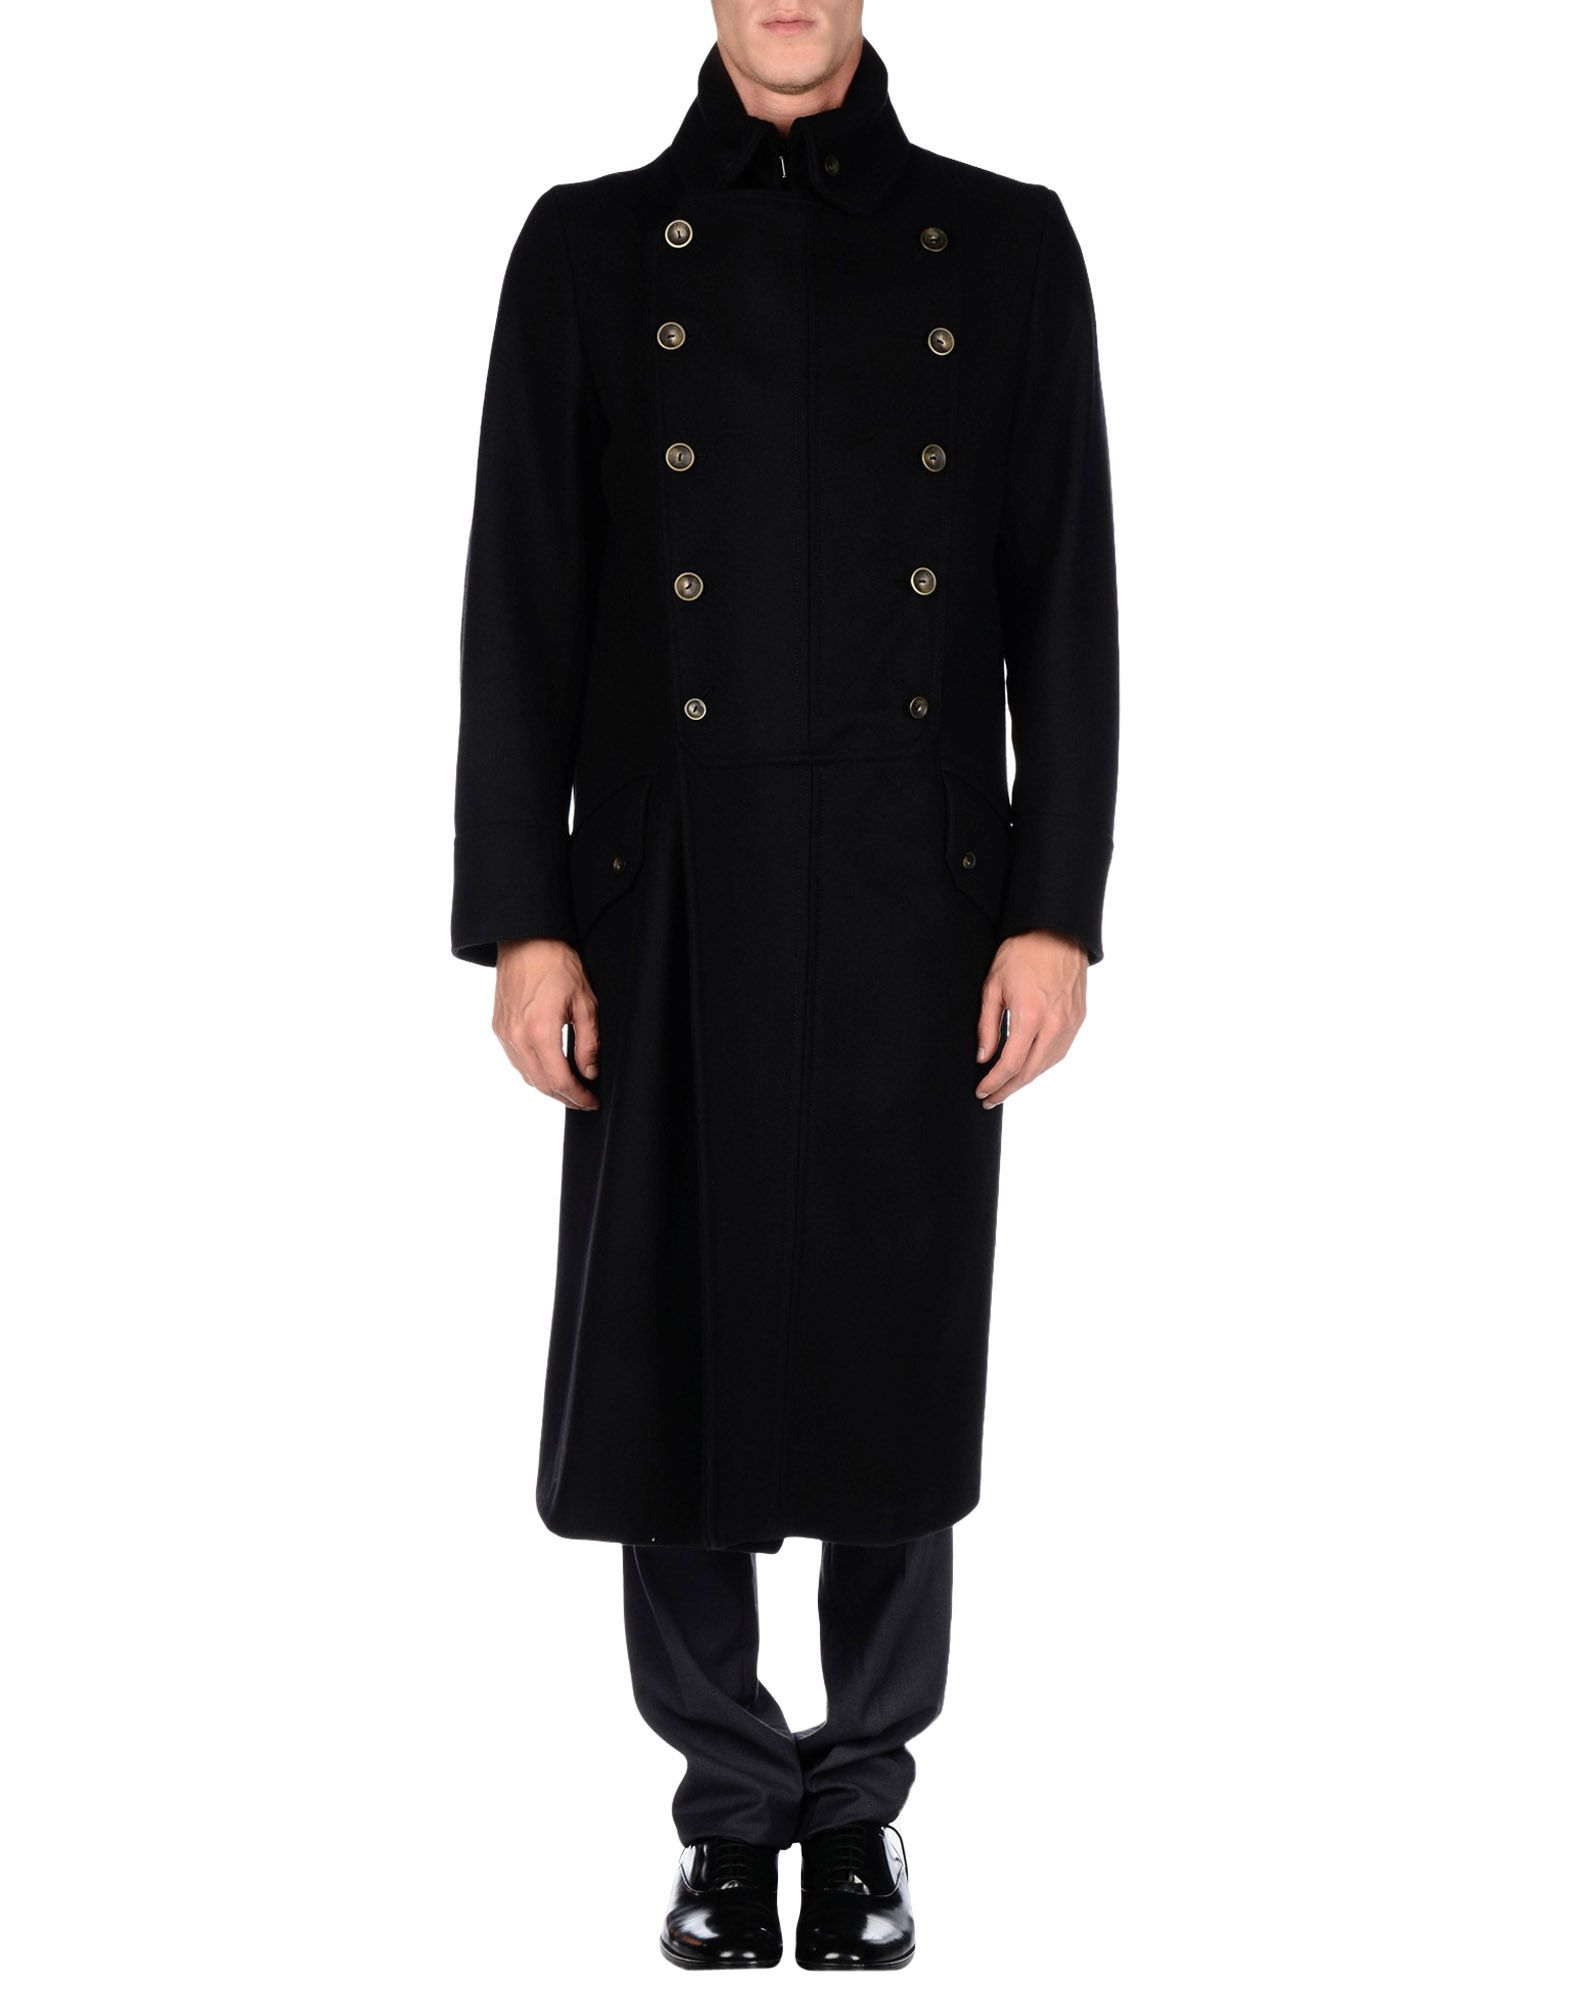 Lyst - Karl Lagerfeld Coat in Black for Men